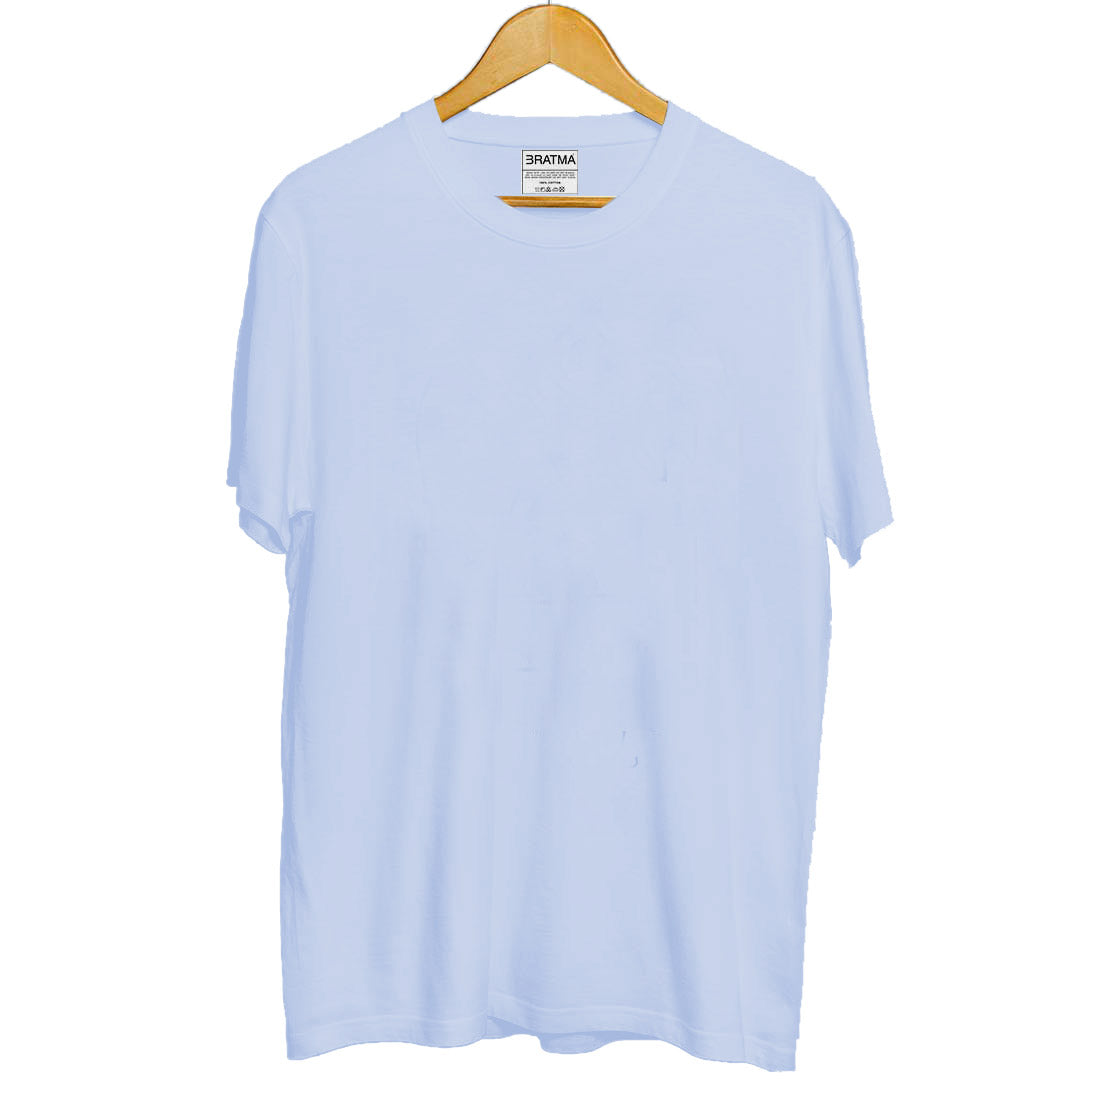 Bratma Plain Pure Cotton T-Shirt - Lavender